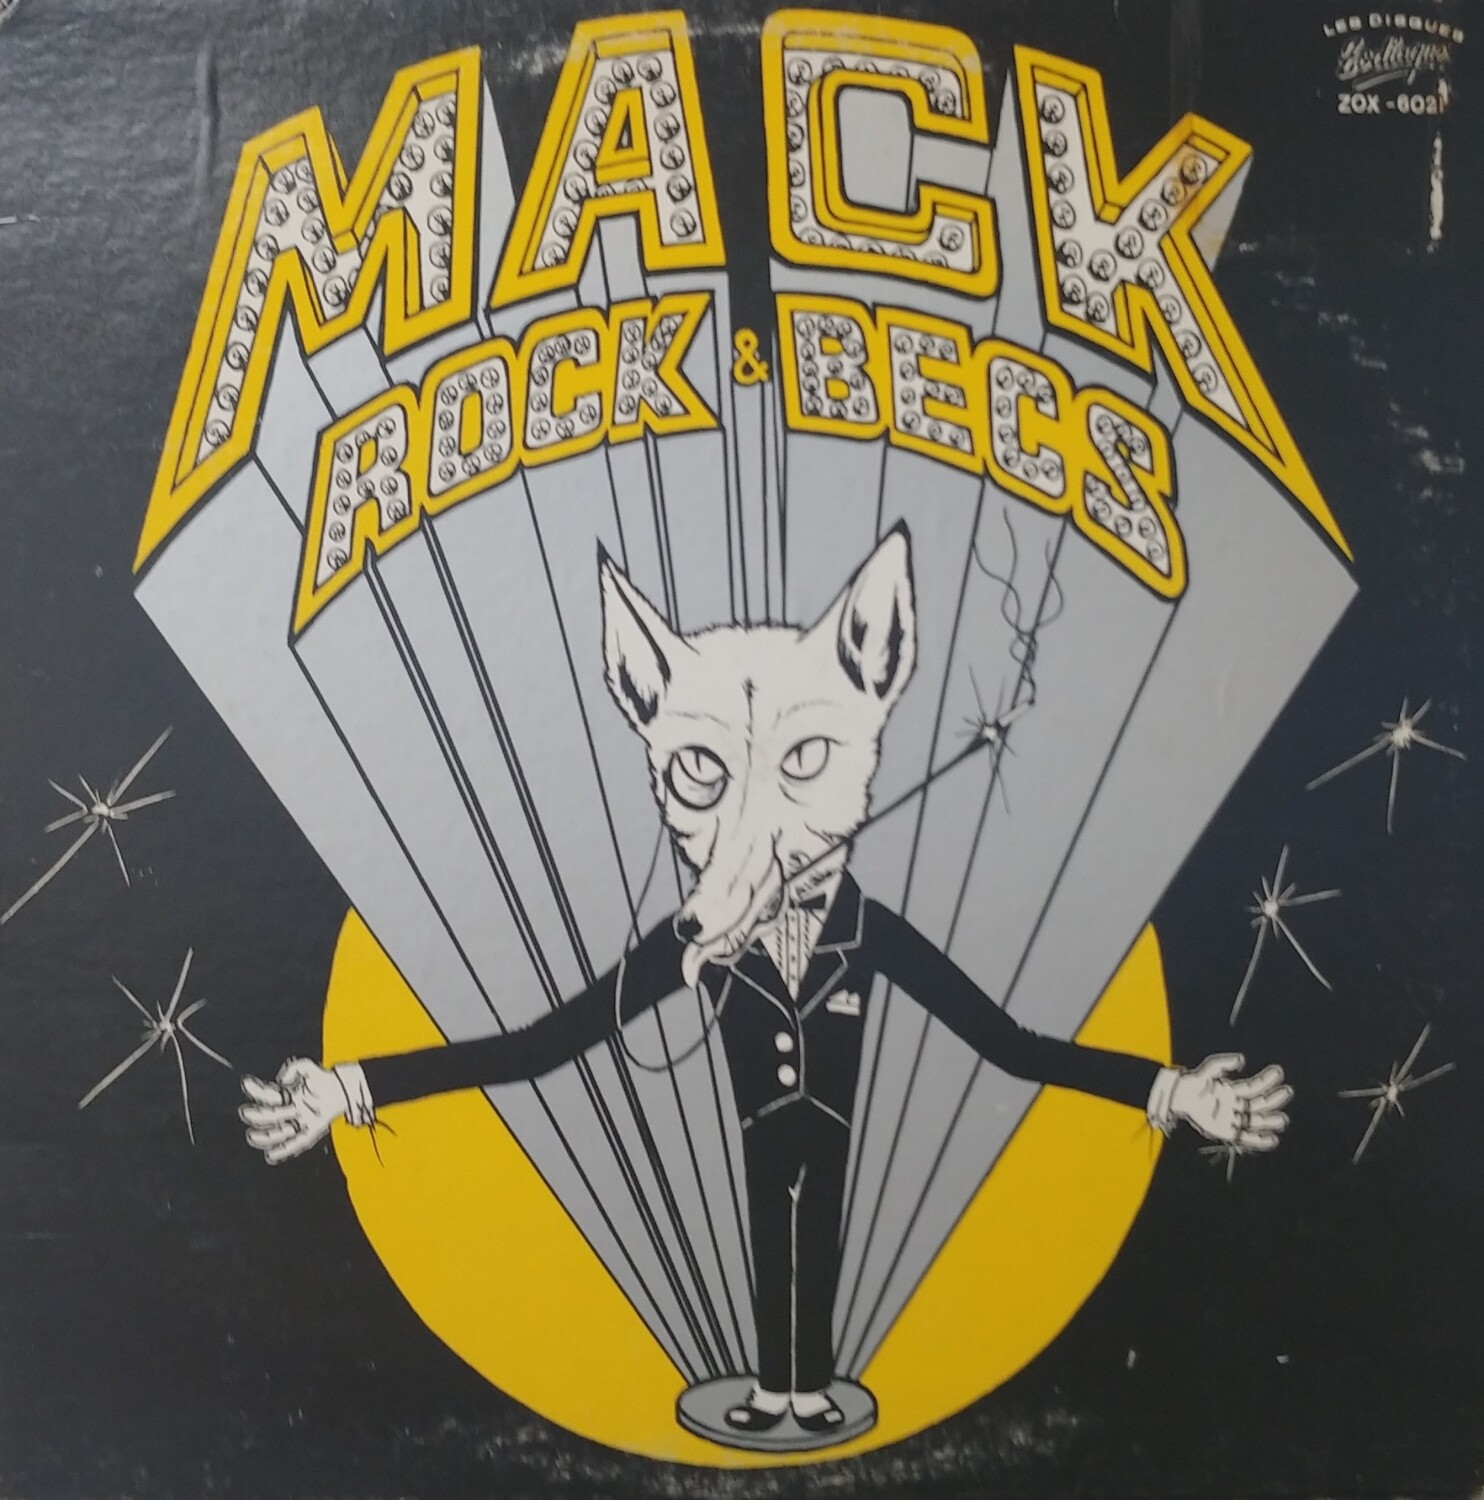 Mack - Rock & Becs